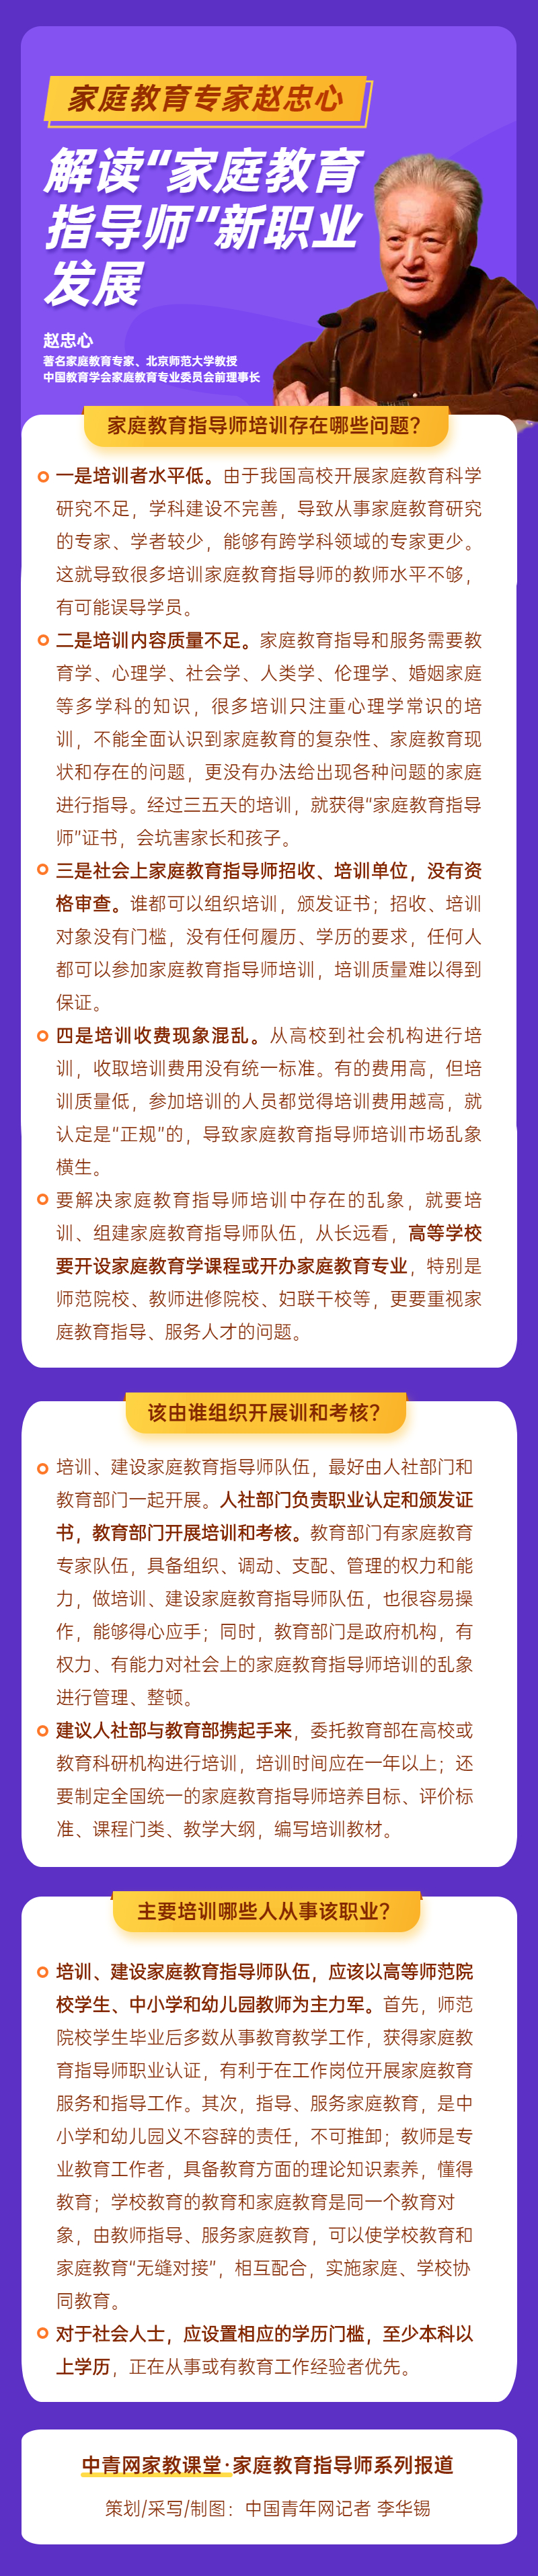 南宫28网站：家庭教育专家赵忠心解读“家庭教育指导师”新职业发展(图1)